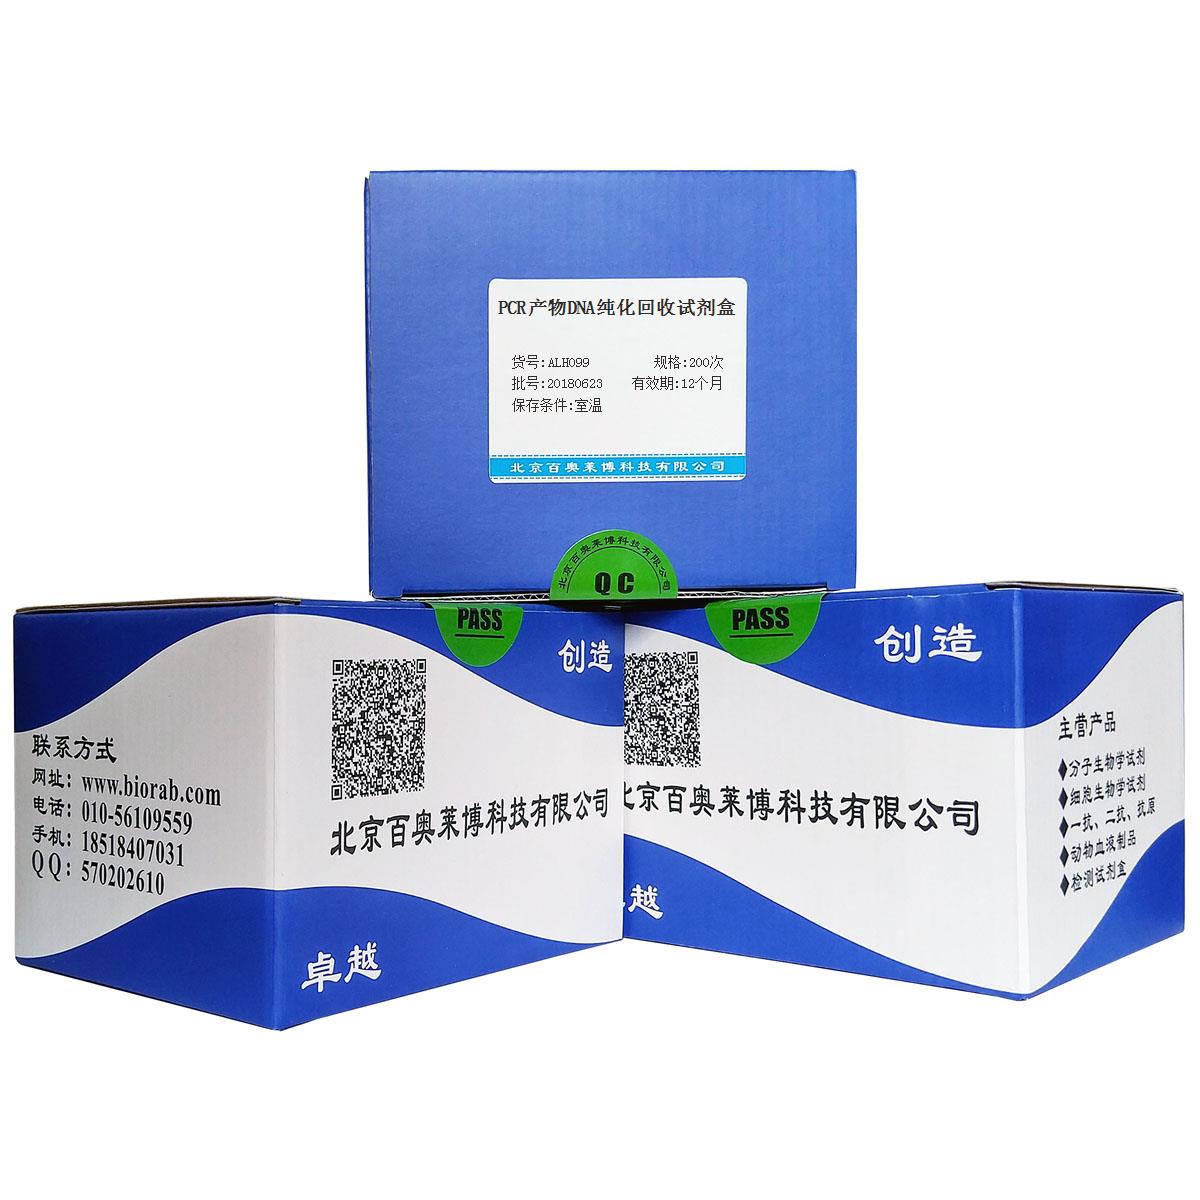 北京现货PCR产物DNA纯化回收试剂盒品牌